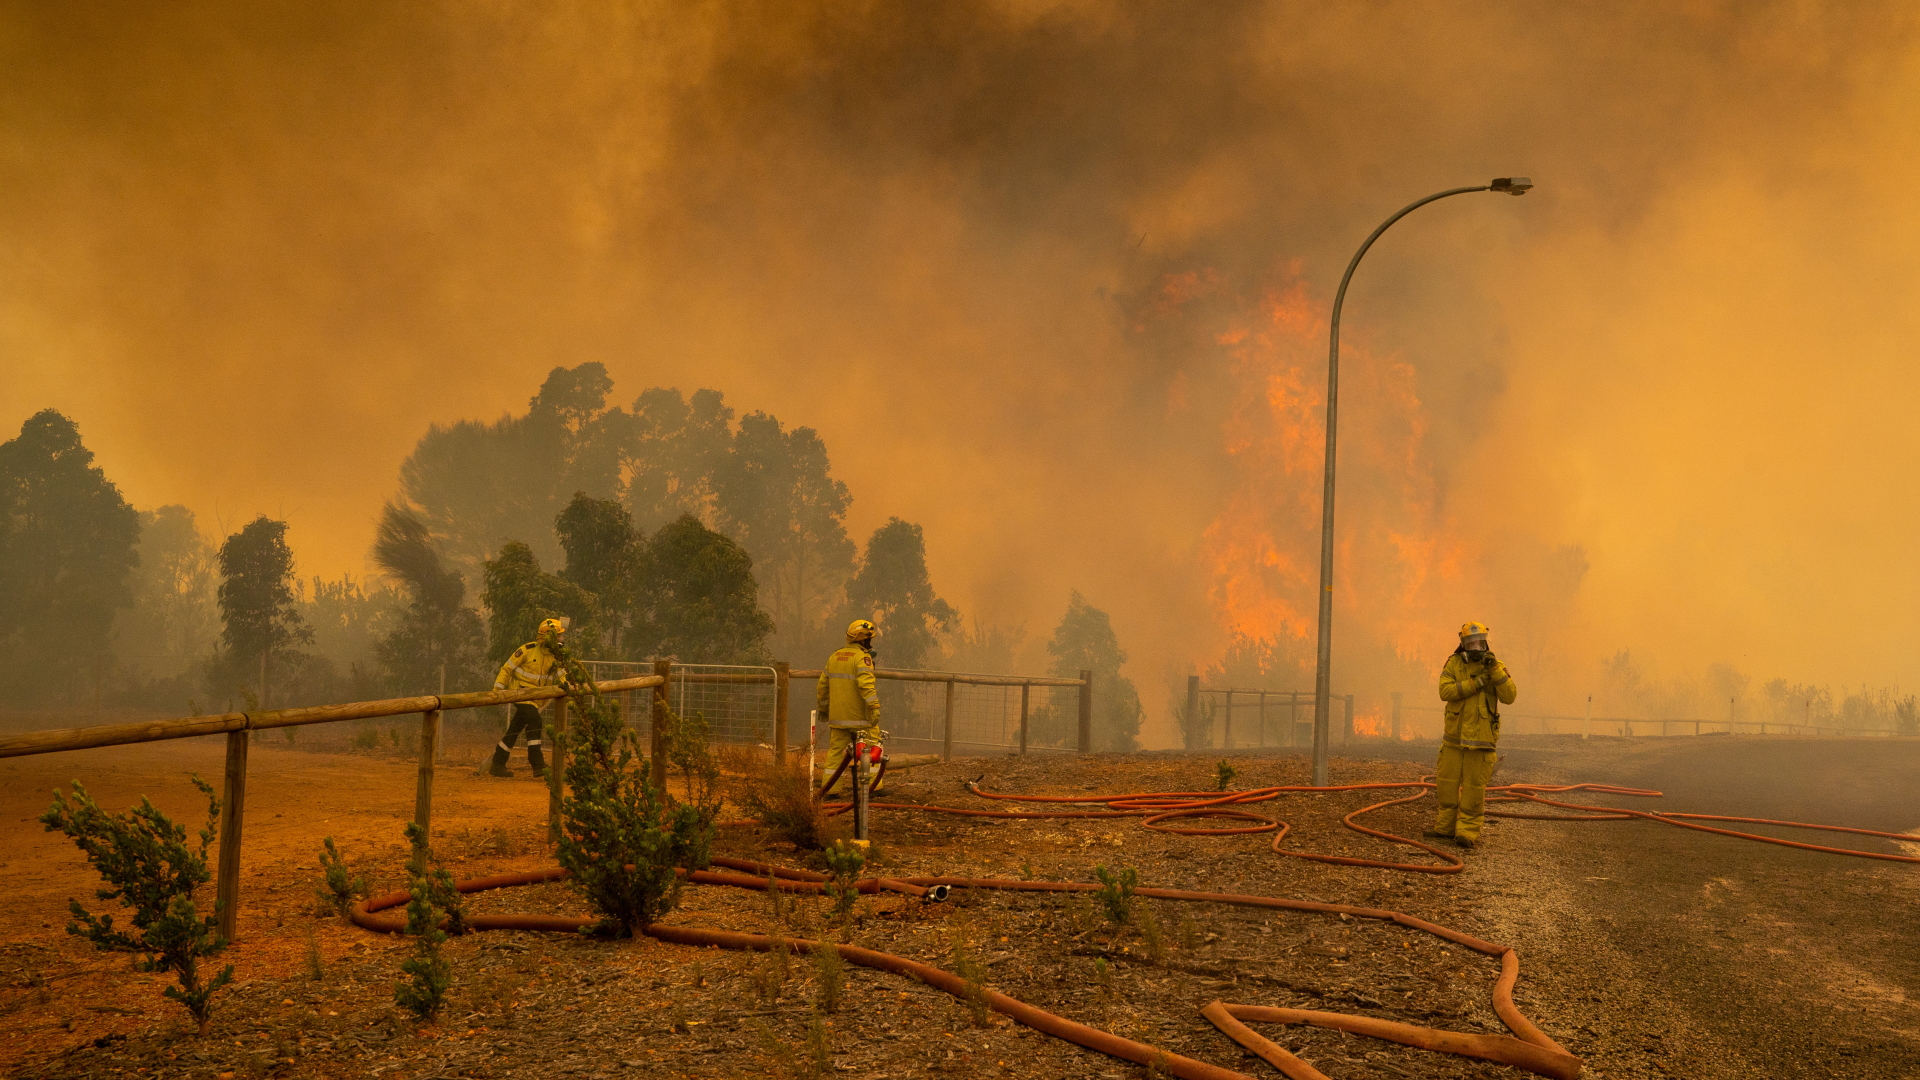 Einsatzkräfte der Feuerwehr bei der Bekämpfung eines Buschfeuers in einem der Vororte von Perth. | dpa